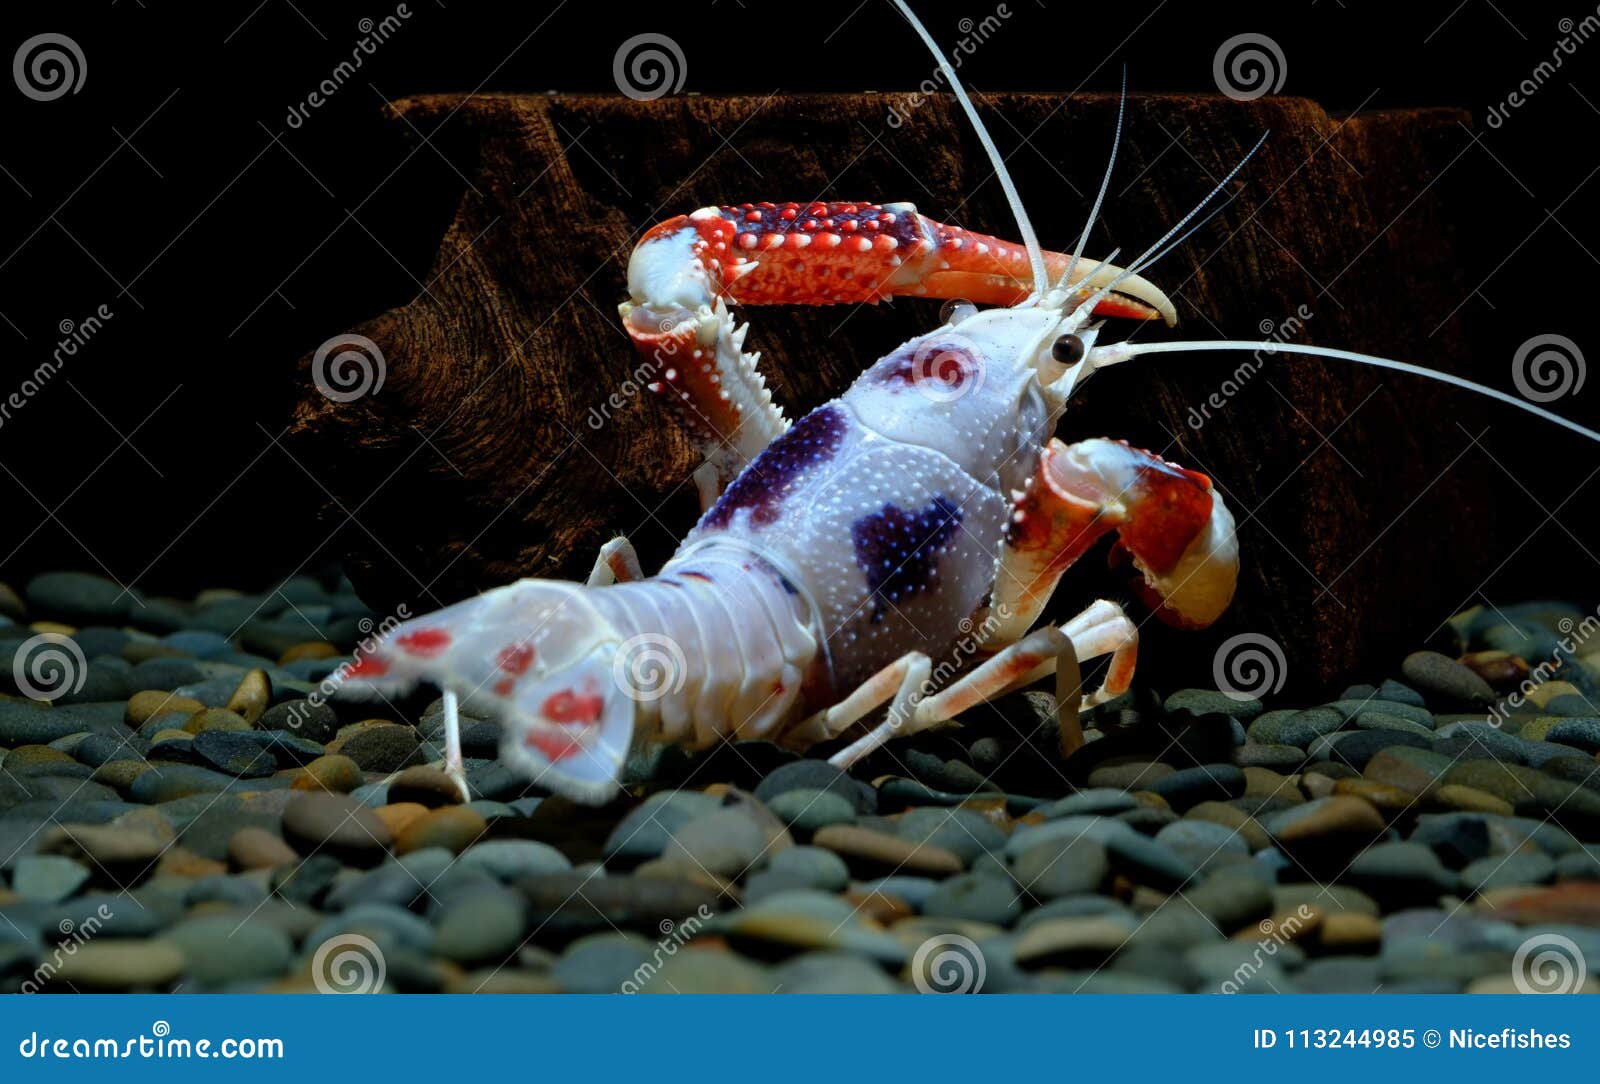 Crayfish Ghost in the Aquarium Stock Image - Image of destructor